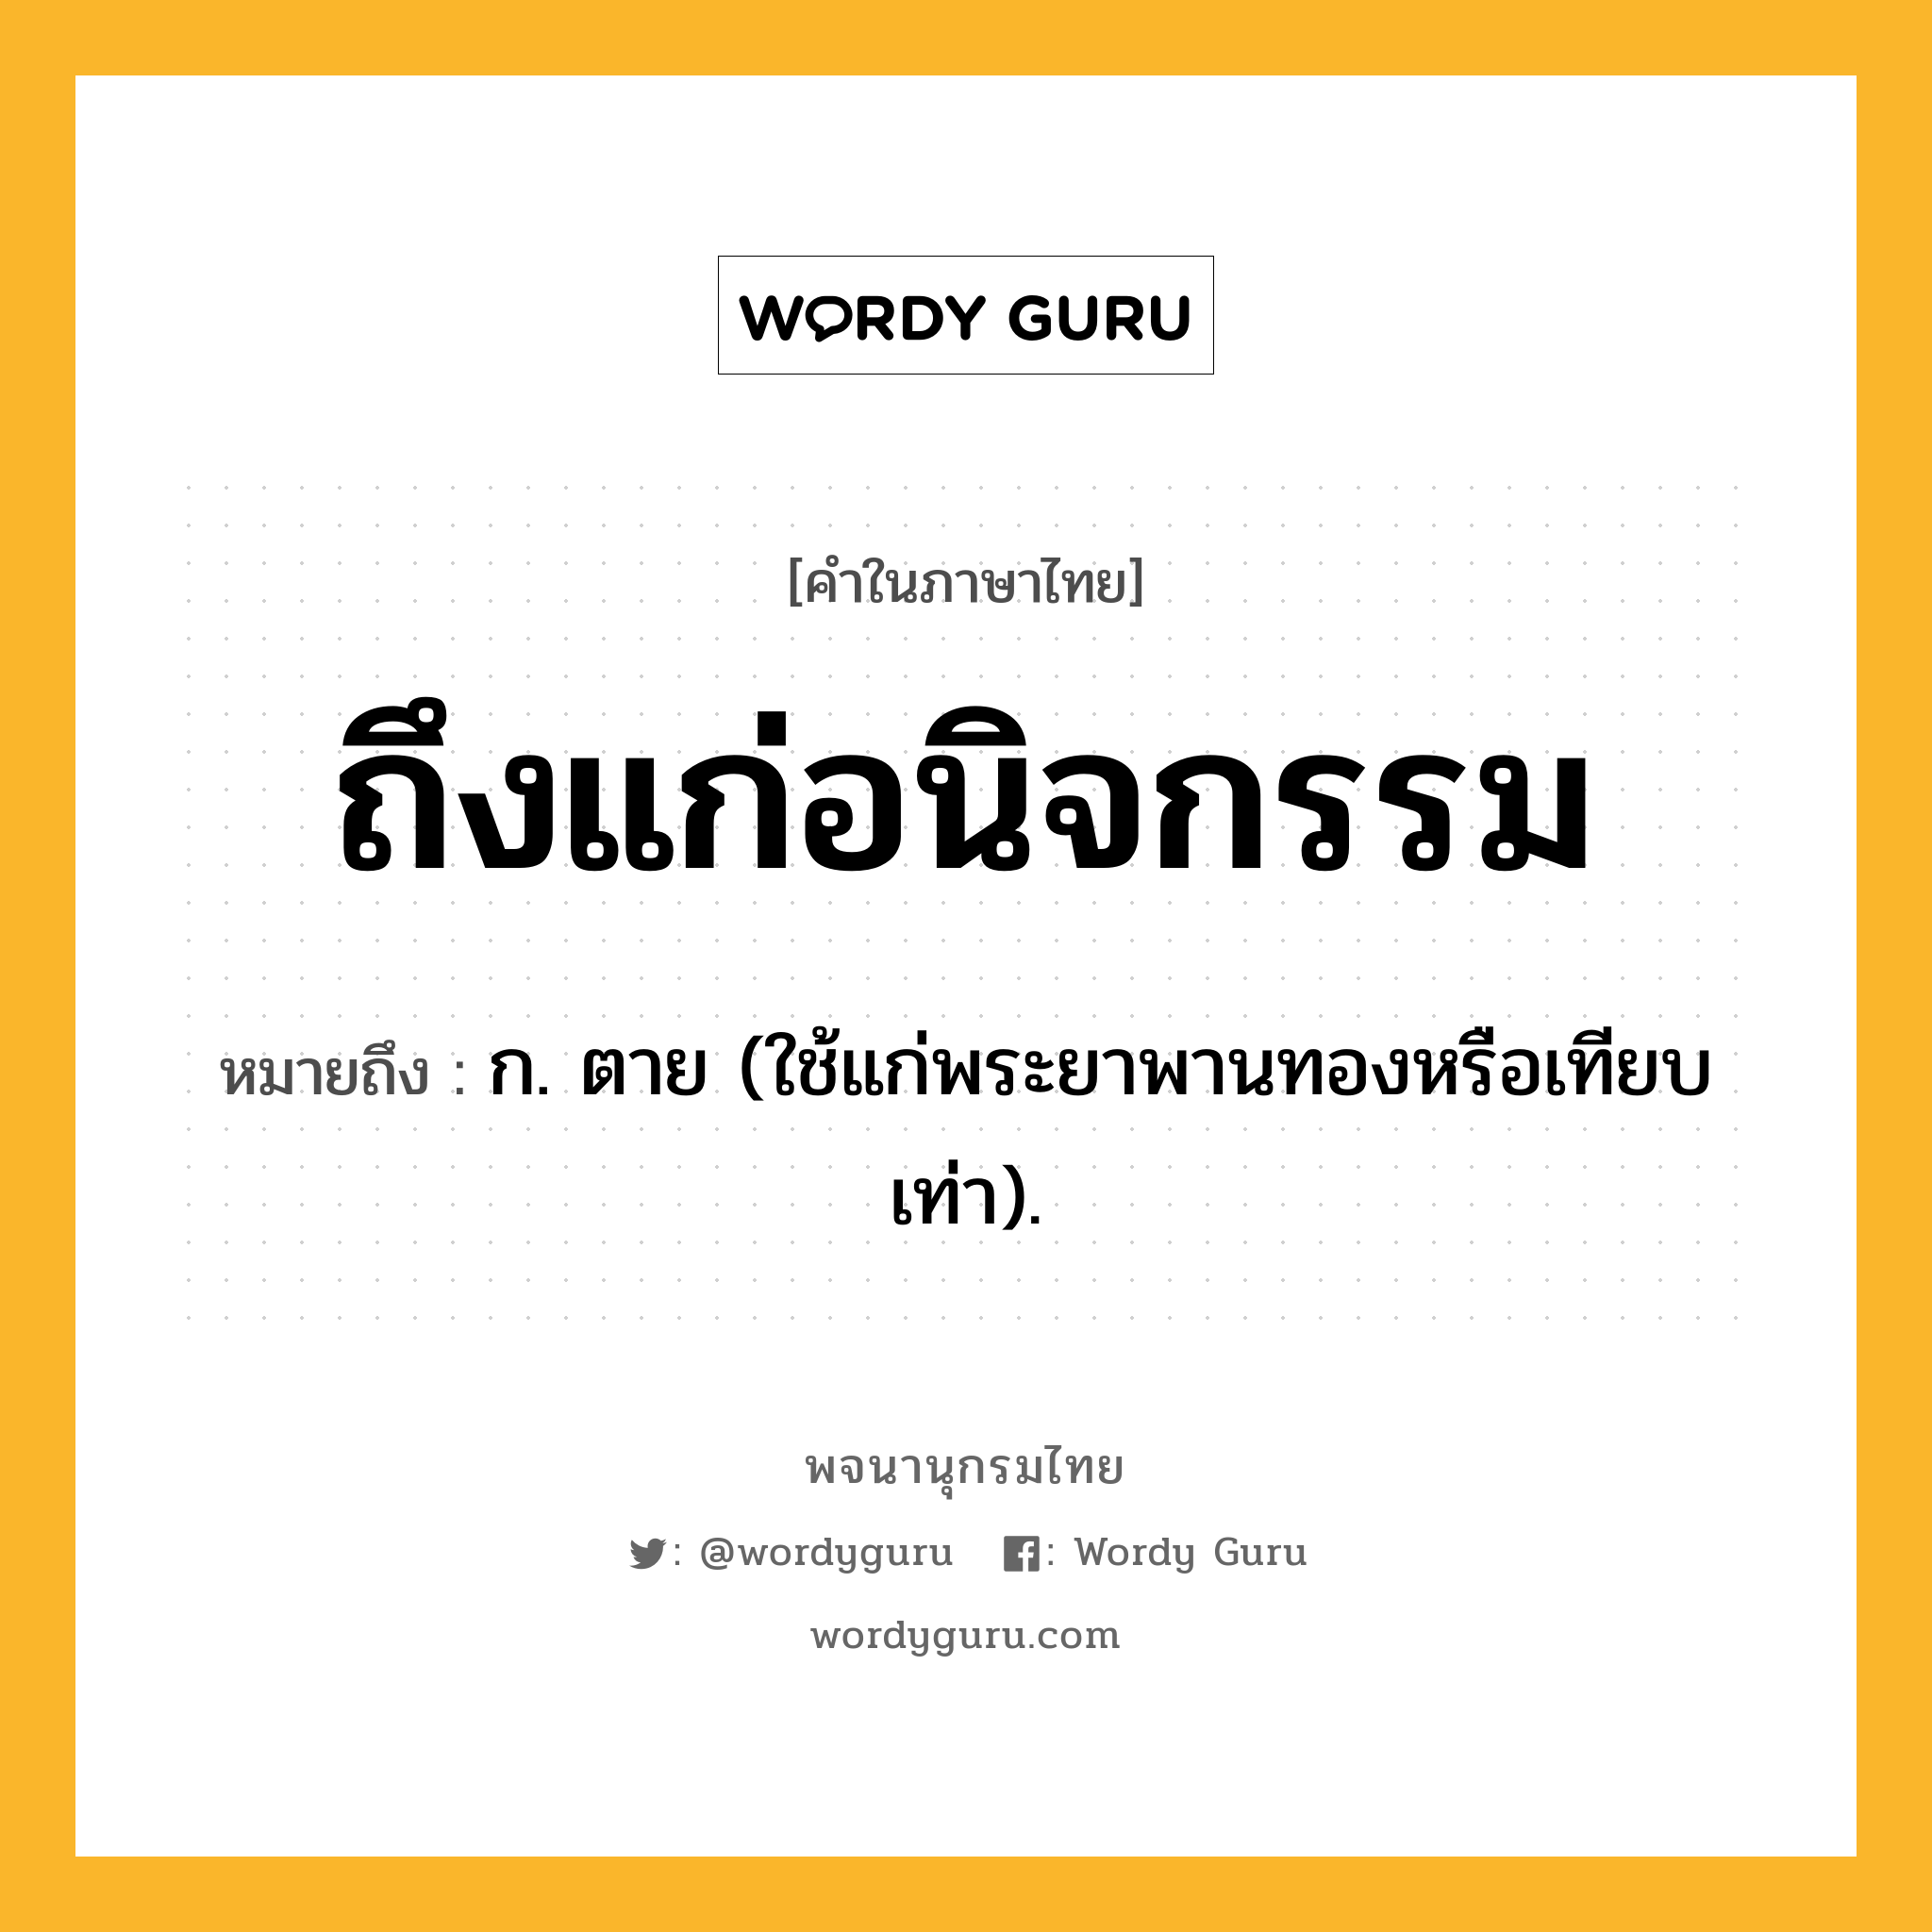 ถึงแก่อนิจกรรม ความหมาย หมายถึงอะไร?, คำในภาษาไทย ถึงแก่อนิจกรรม หมายถึง ก. ตาย (ใช้แก่พระยาพานทองหรือเทียบเท่า).